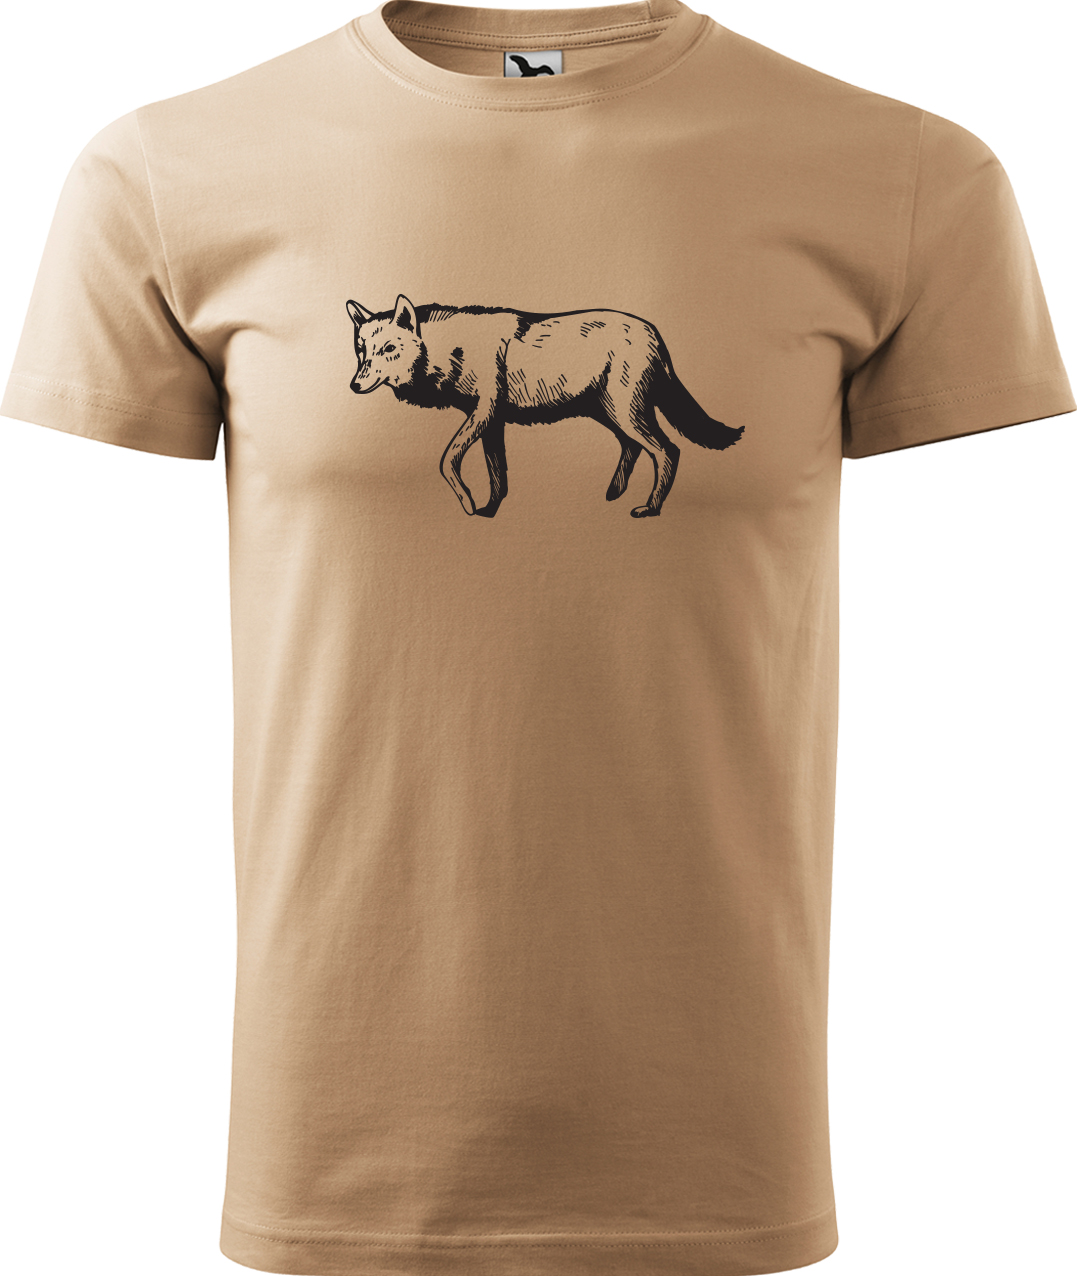 Pánské tričko s vlkem - Vlk Velikost: XL, Barva: Písková (08), Střih: pánský